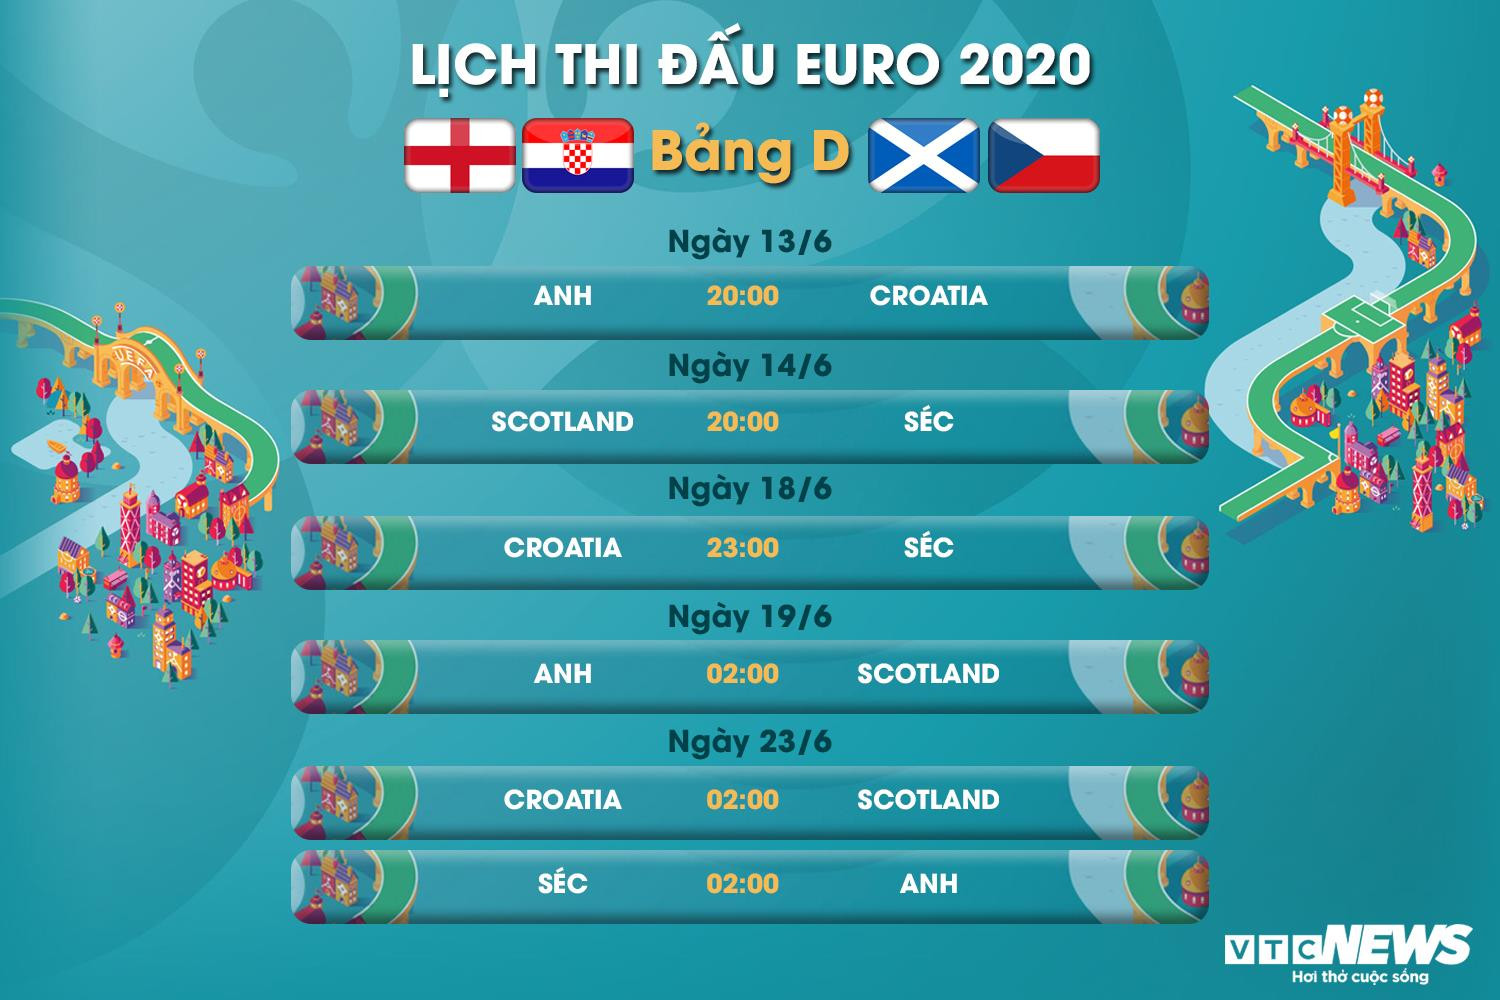 Lịch thi đấu EURO 2020 bảng D - 1